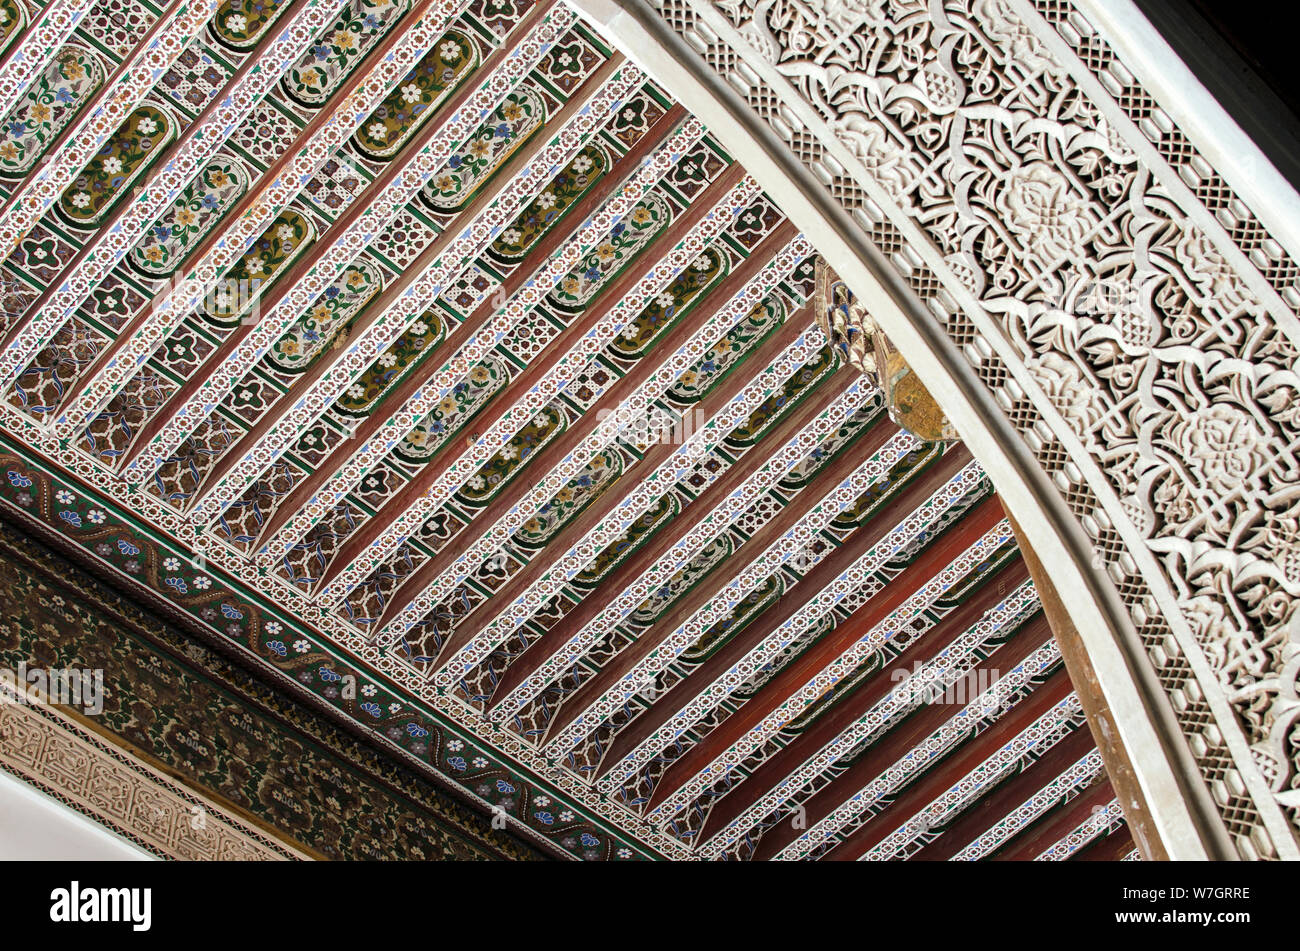 Détail de la sculpture sur stuc, sur fond de plafond en bois peint à la main. Palais Bahia, Marrakech Banque D'Images